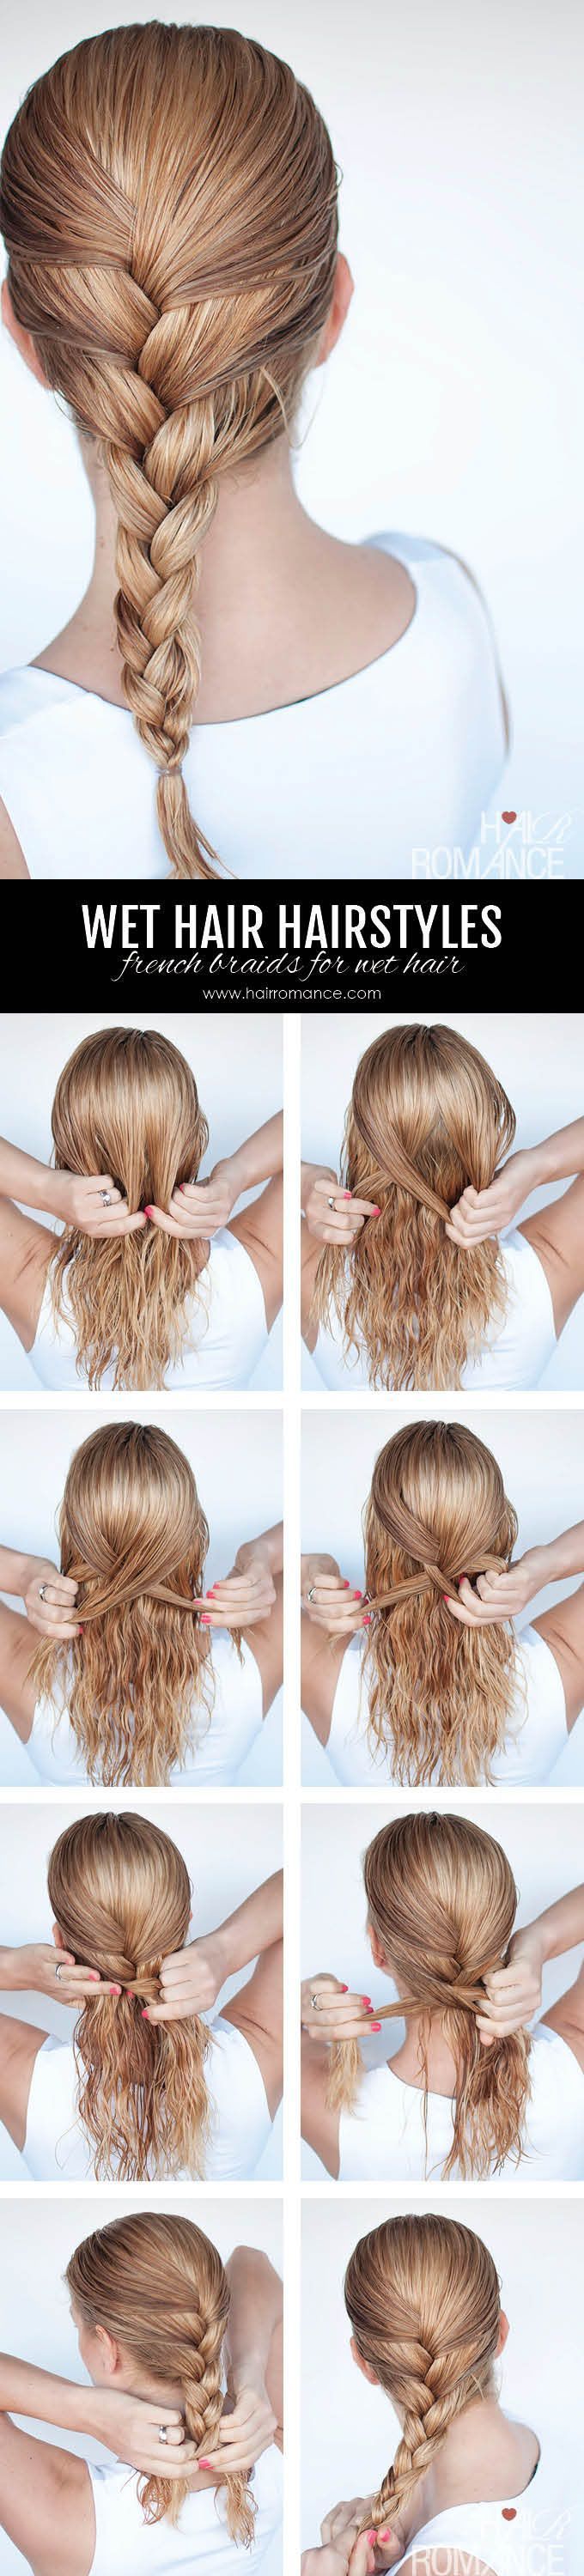 10 peinados que puedes usar si tienes el cabello mojado